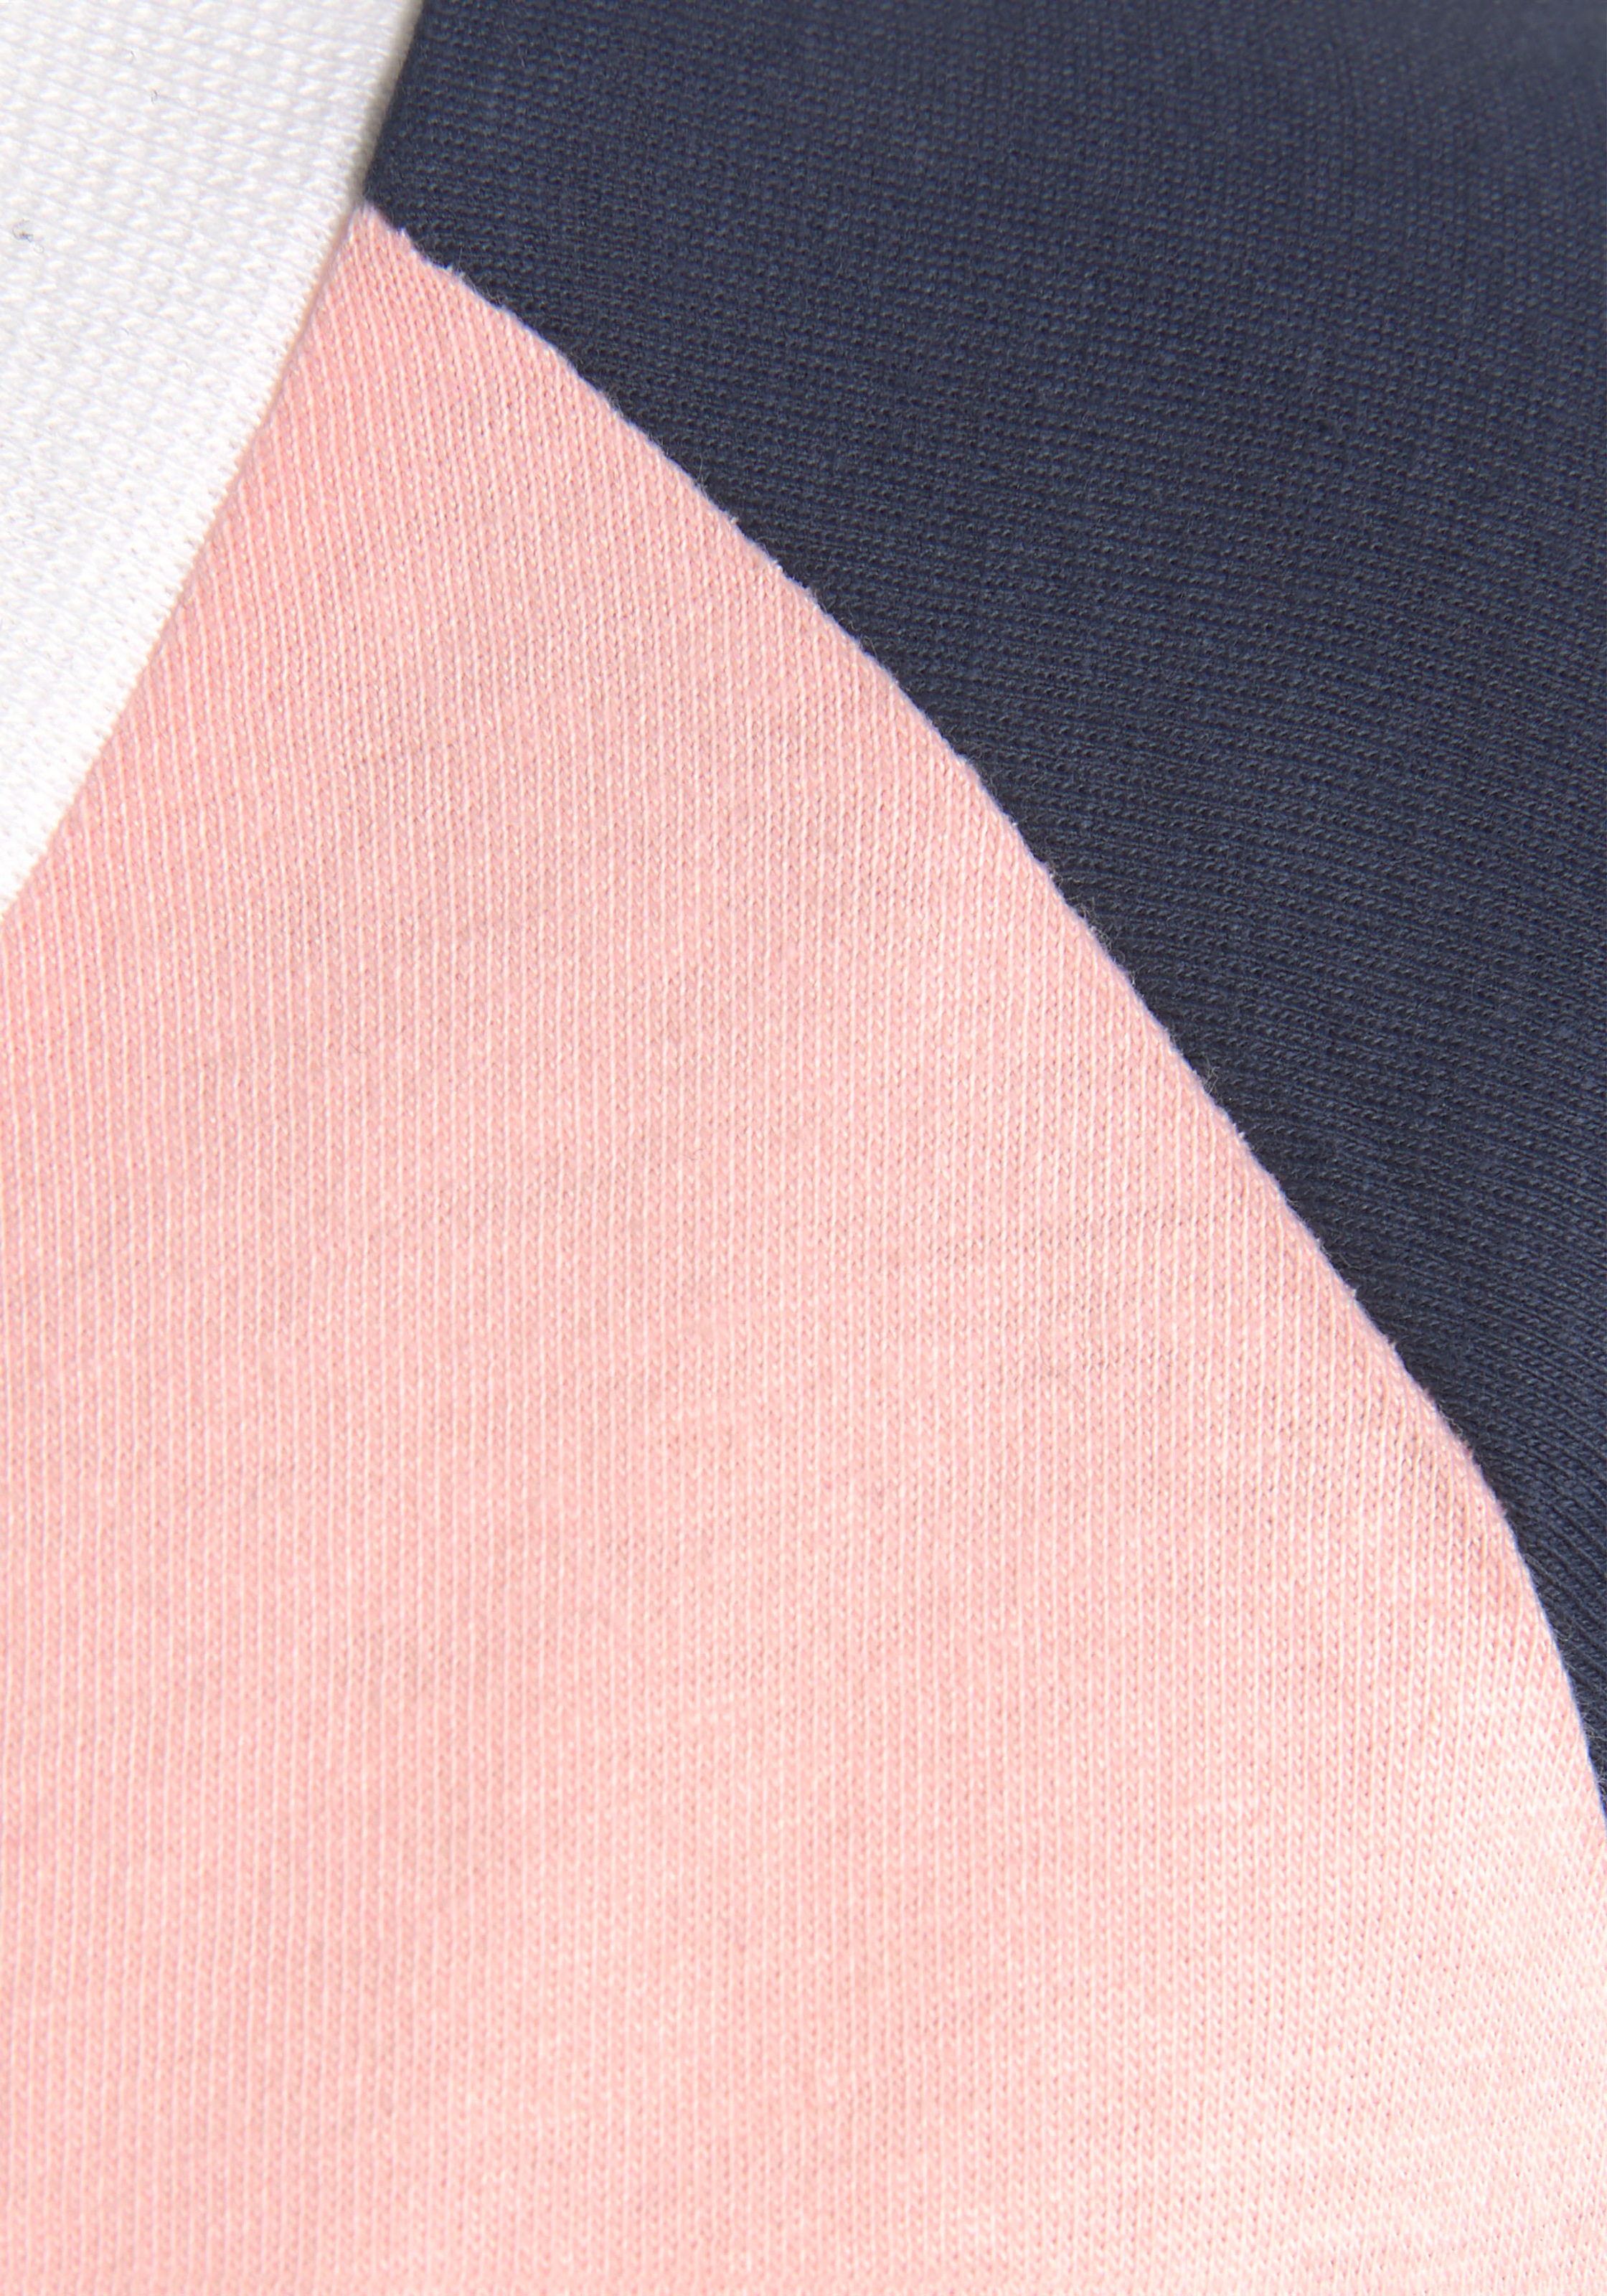 KangaROOS Pyjama, (2 tlg., 1 Stück), mit kontrastfarbenen Raglanärmeln »  LASCANA | Bademode, Unterwäsche & Lingerie online kaufen